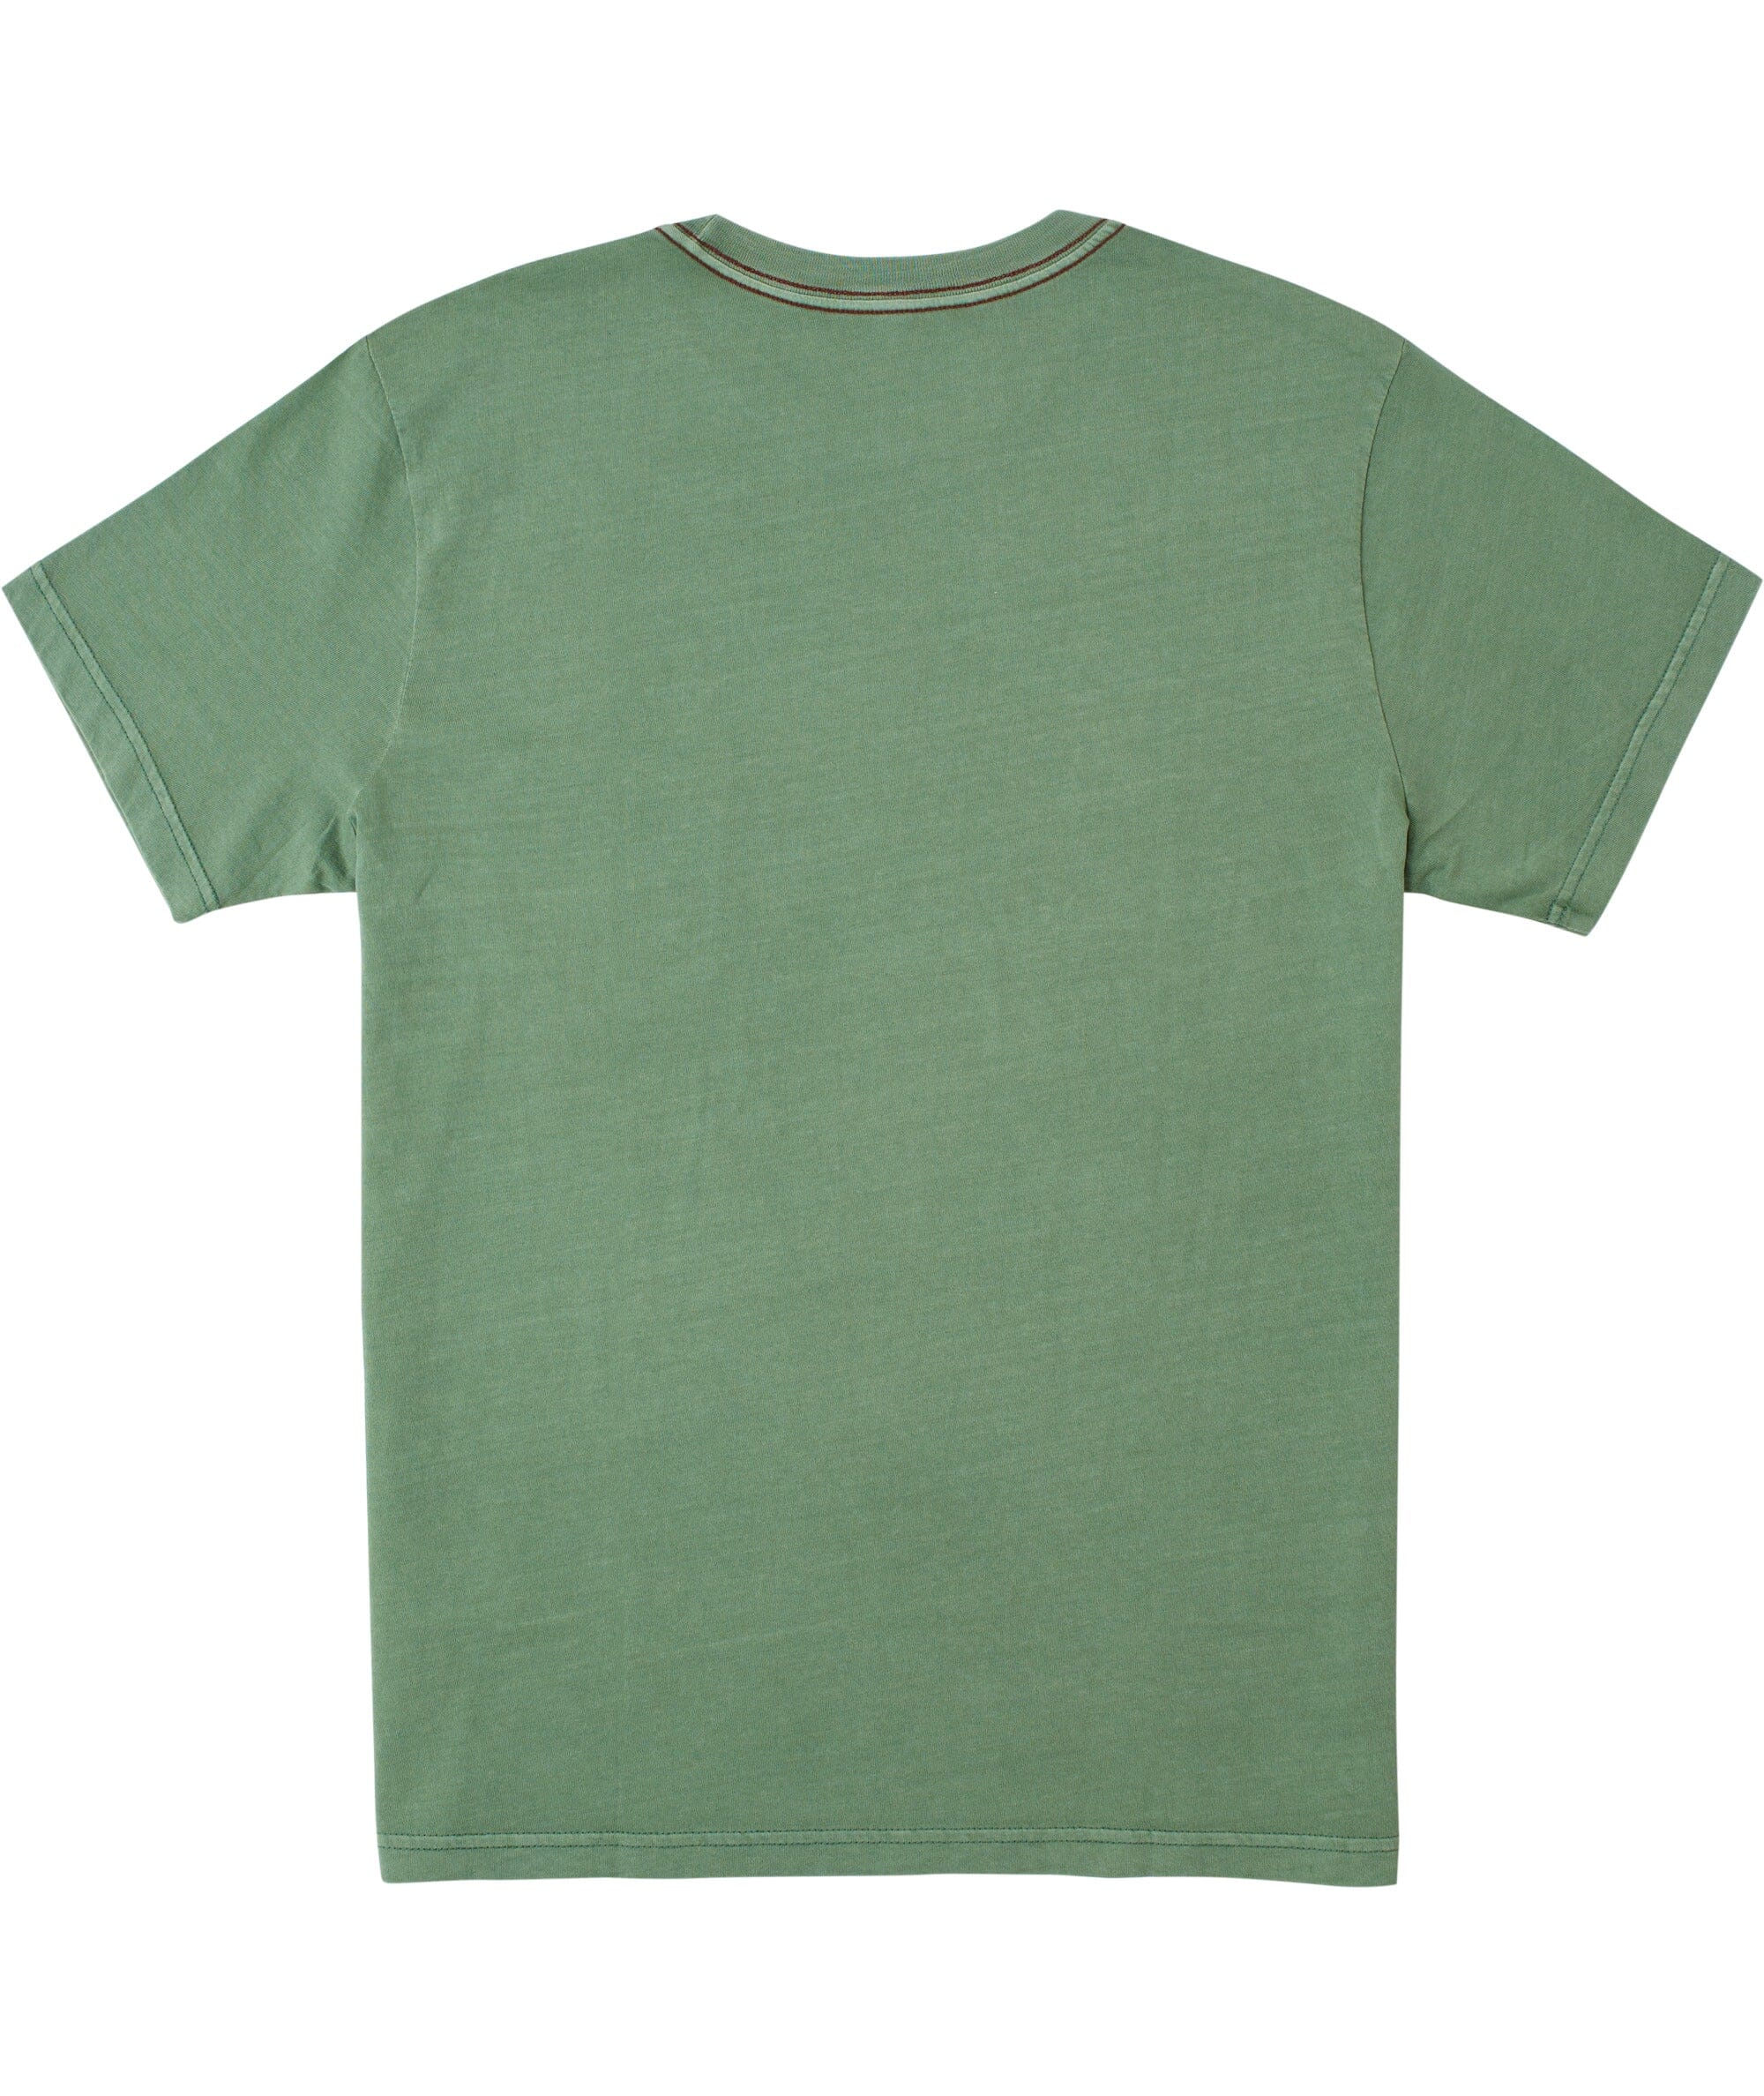 RVCA PTS II Pigment T-Shirt Verdite Men's Short Sleeve T-Shirts RVCA 